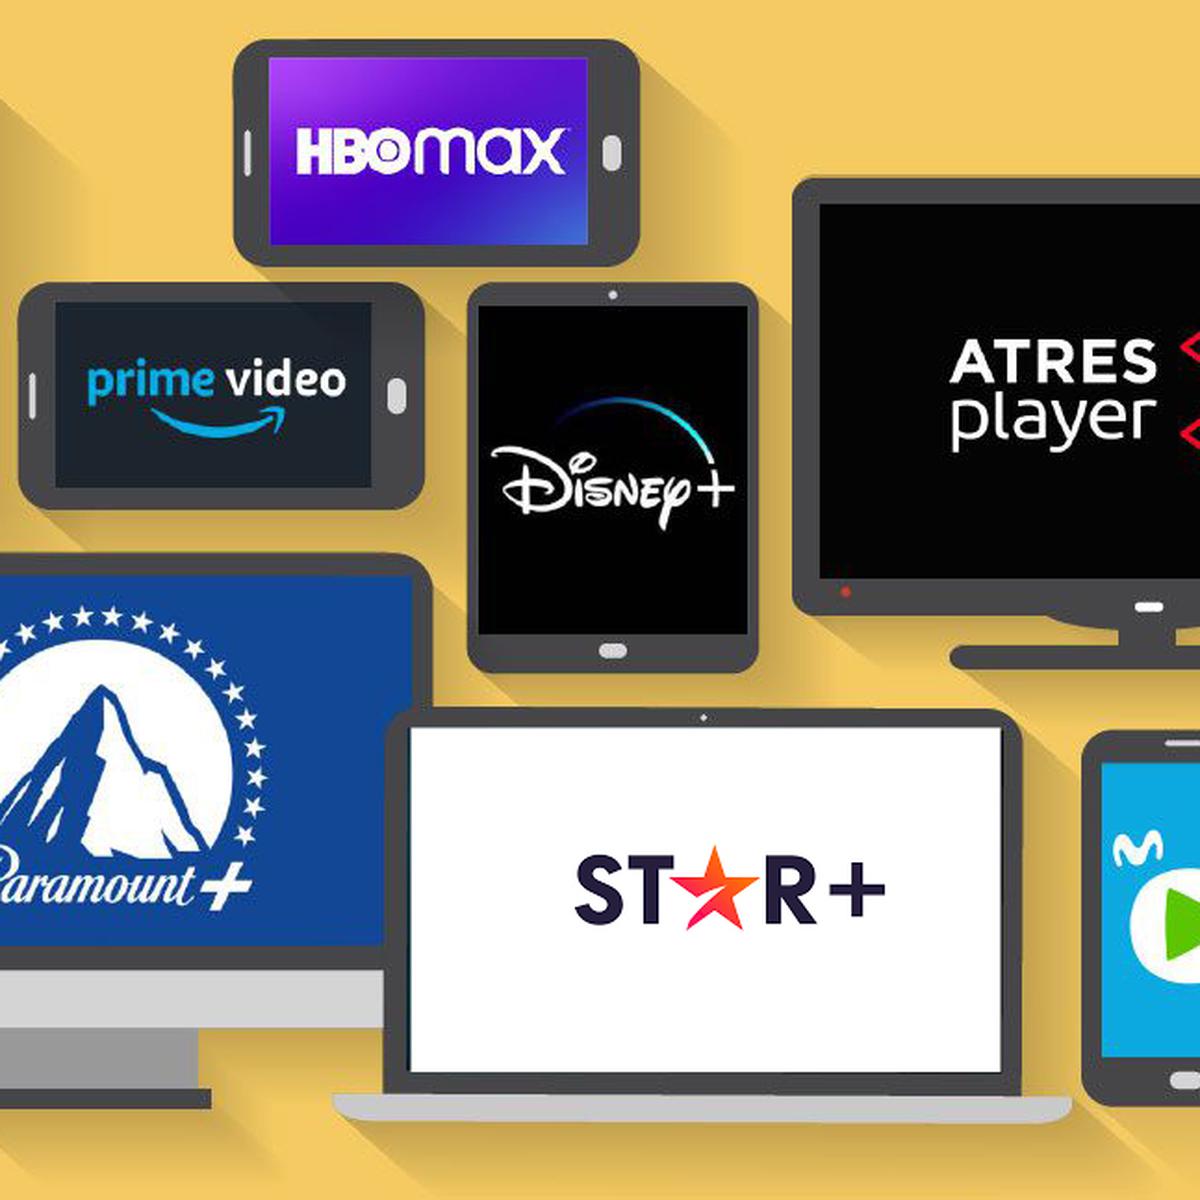 Comparativa de precios de plataformas de streaming: Netflix, HBO